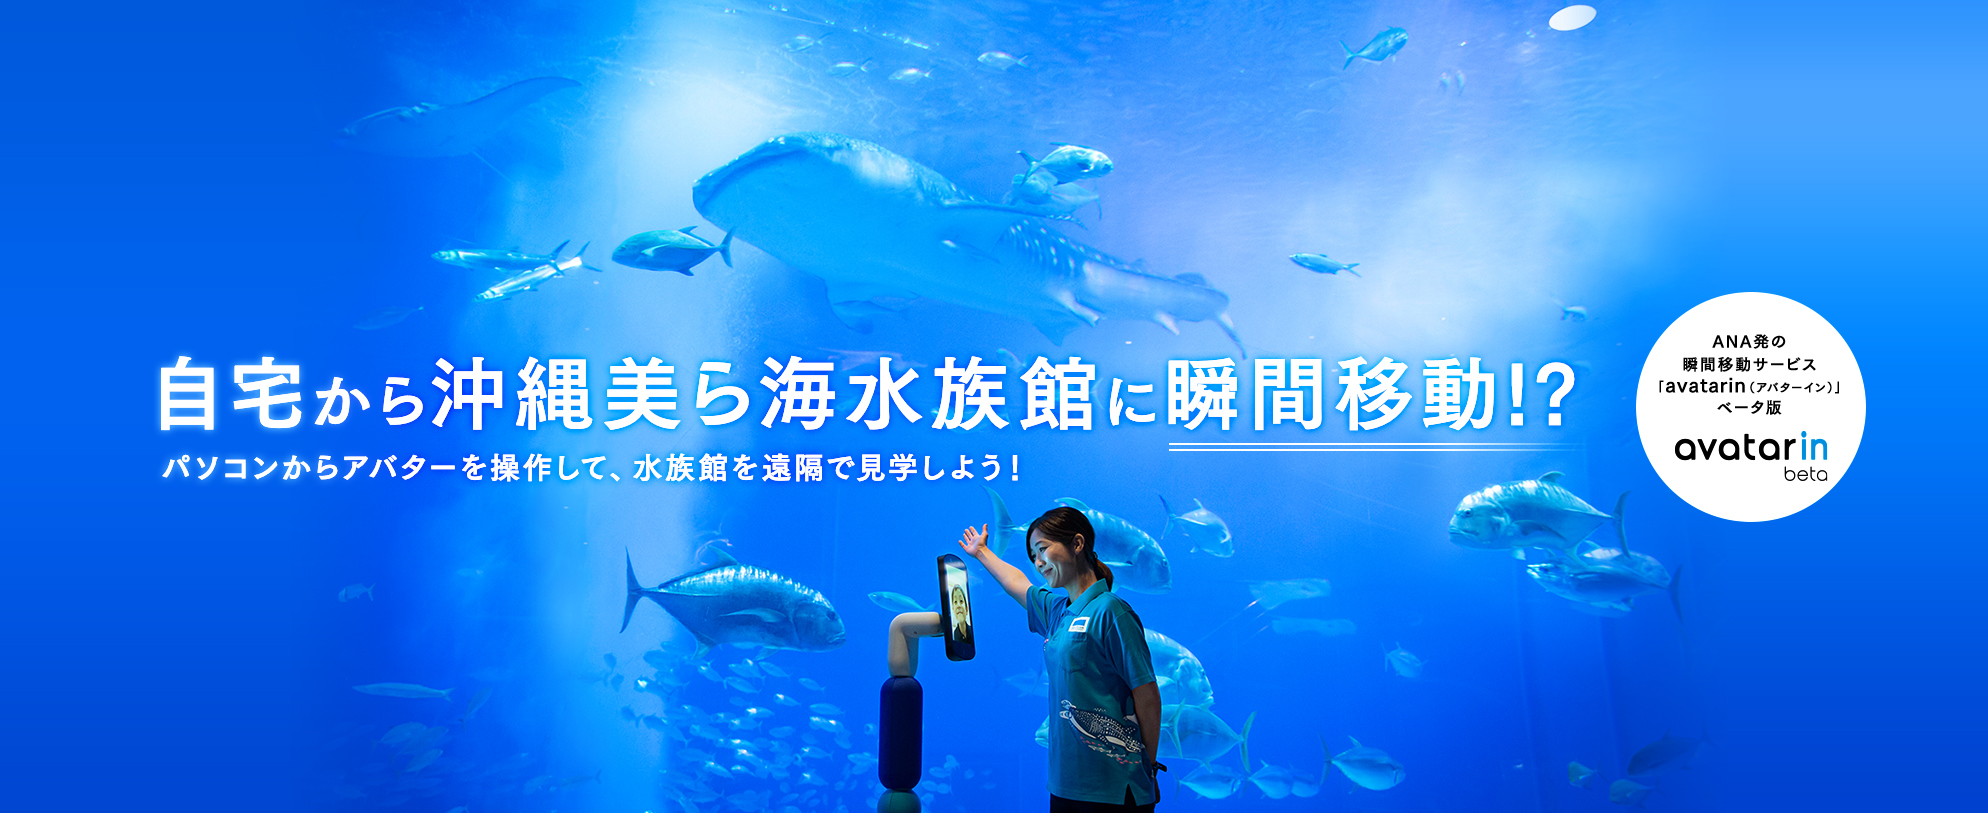 沖縄美ら海水族館 沖縄の美ら海を 次の世代へ